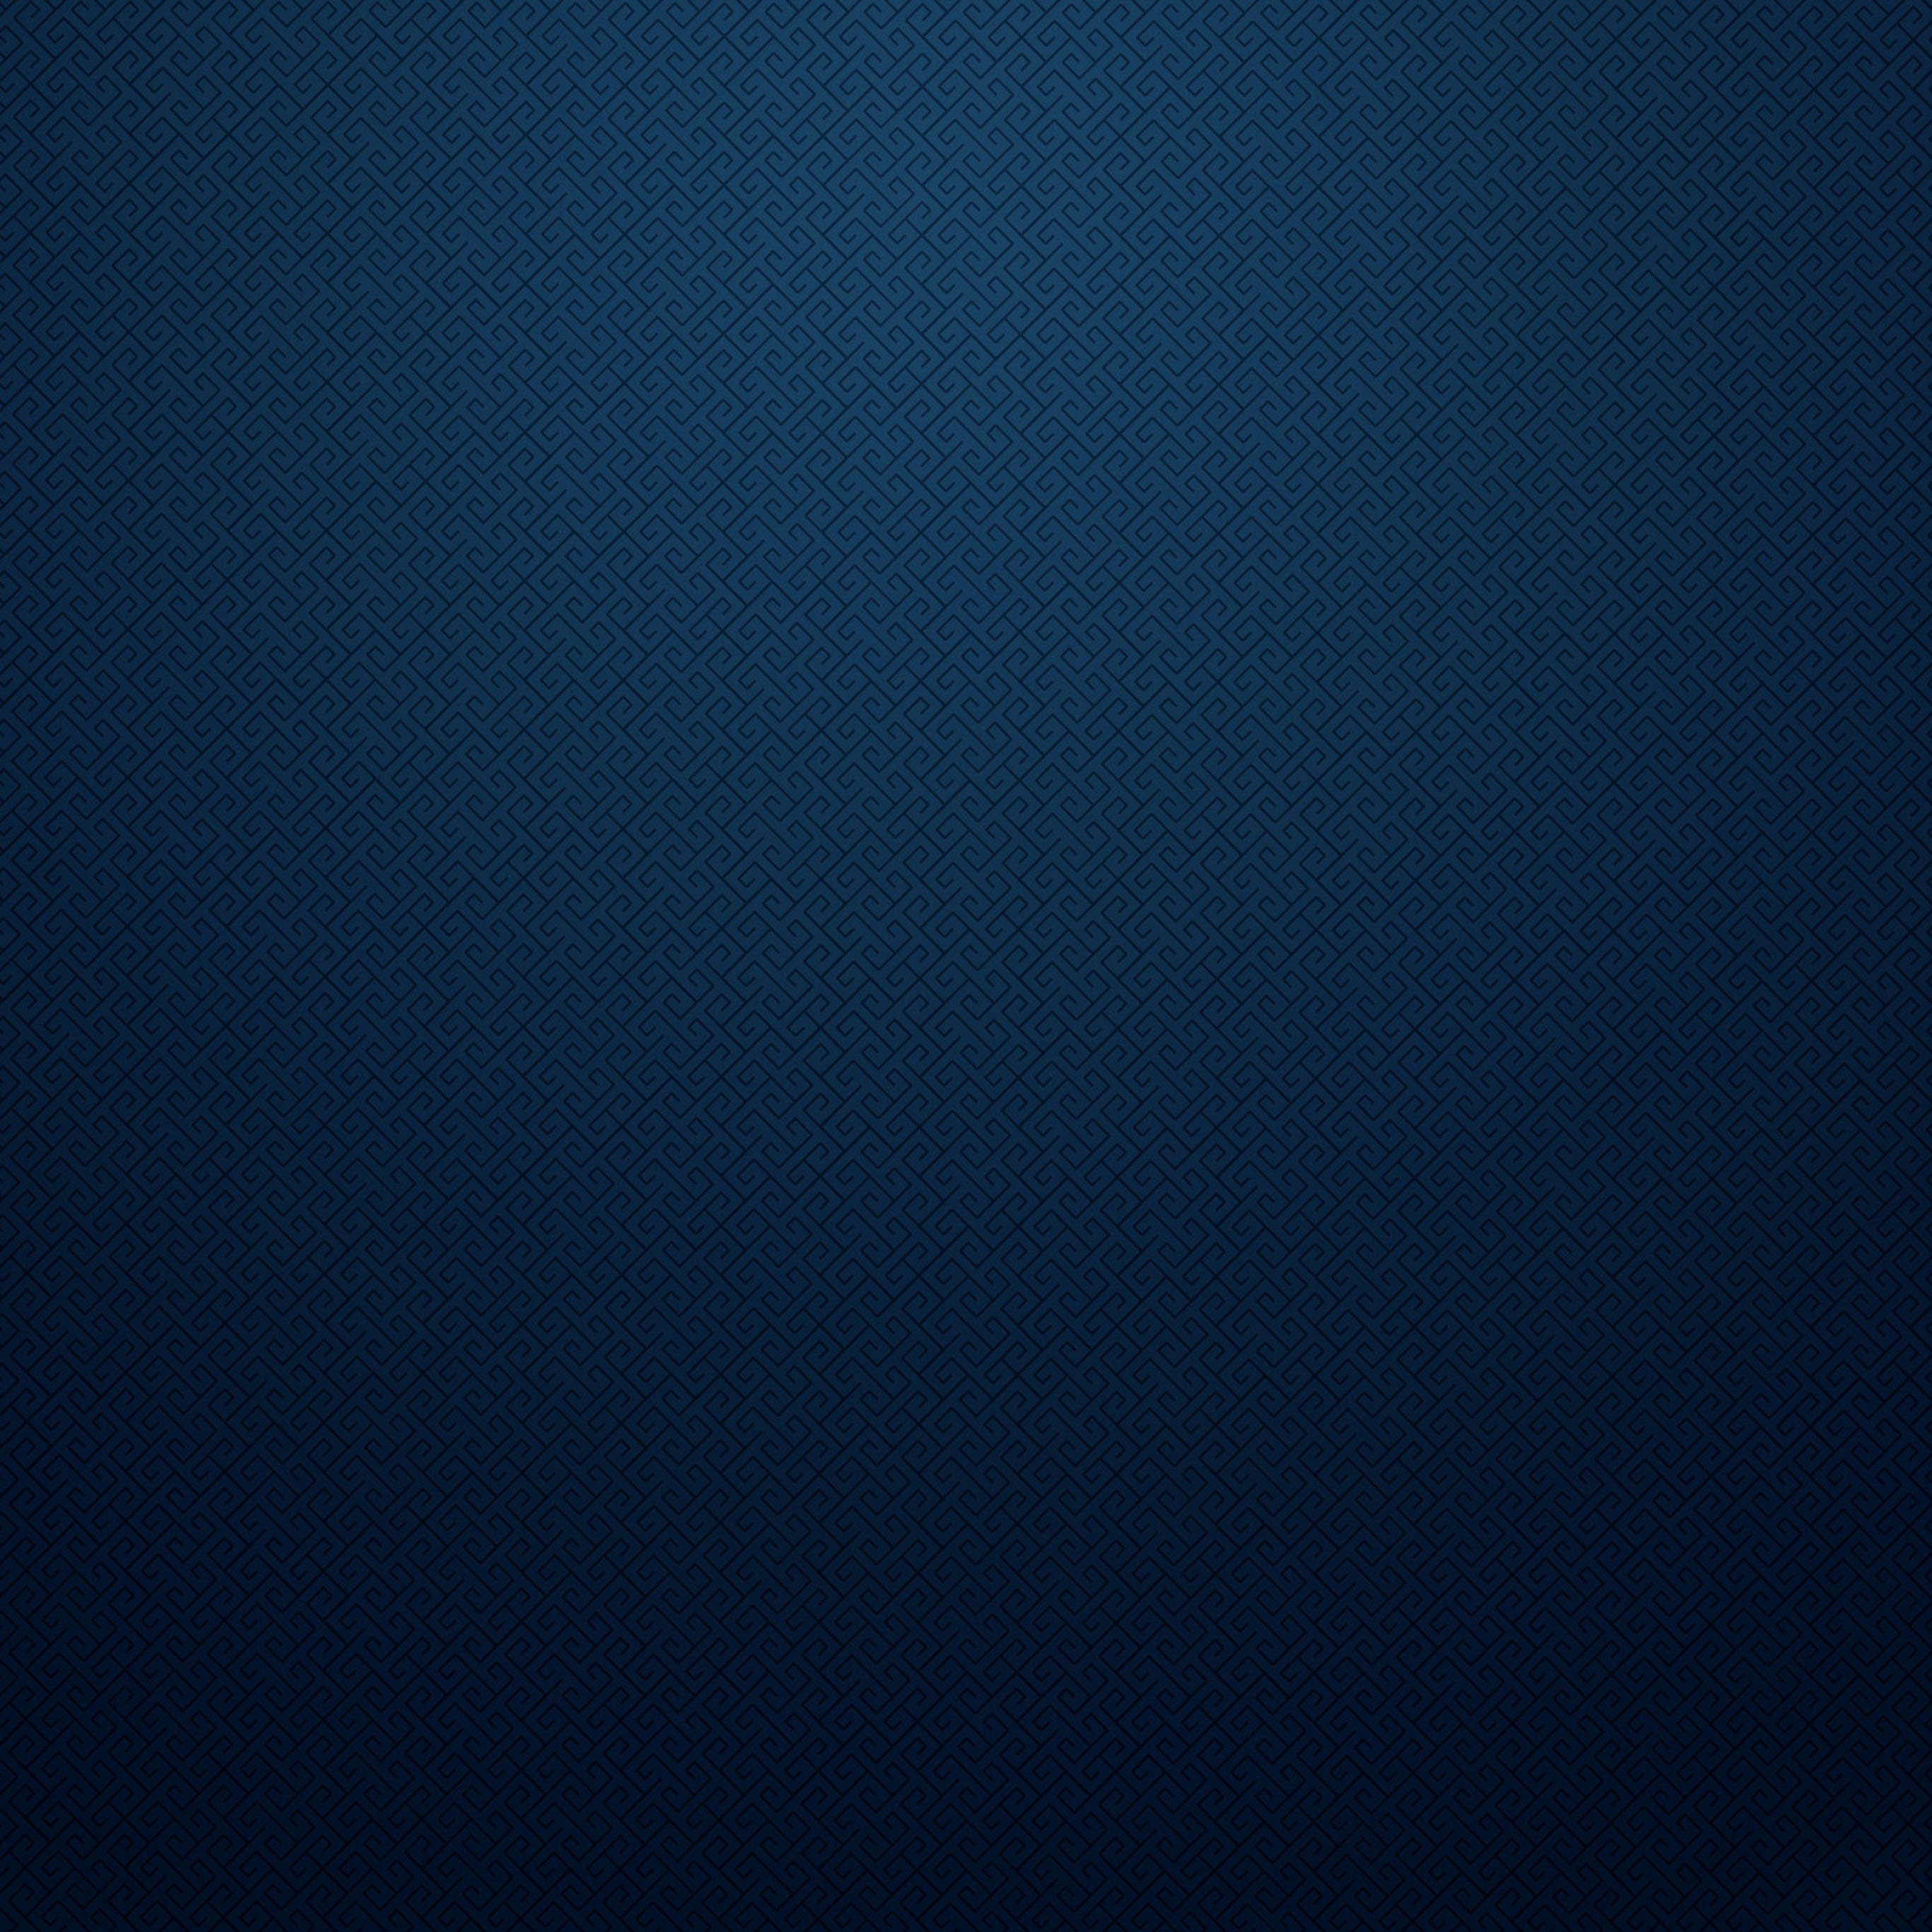 Dark blue background 2 iPad Pro Wallpaper iPad Pro Wallpaper HD